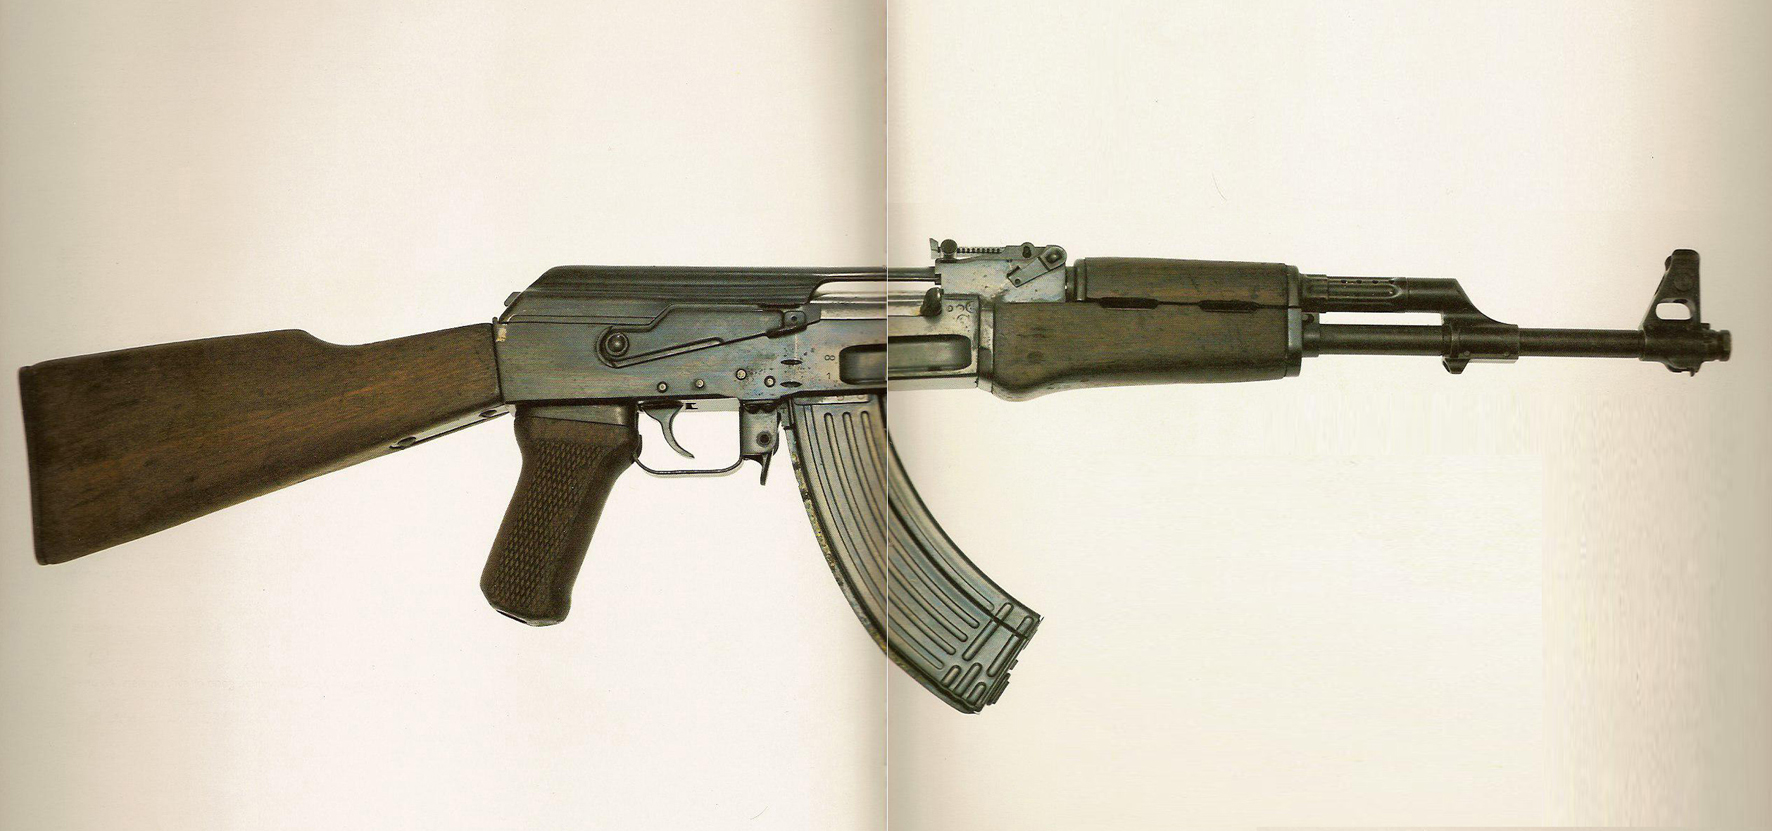 Mikhail Kalashnikov, AK47 assault rifle